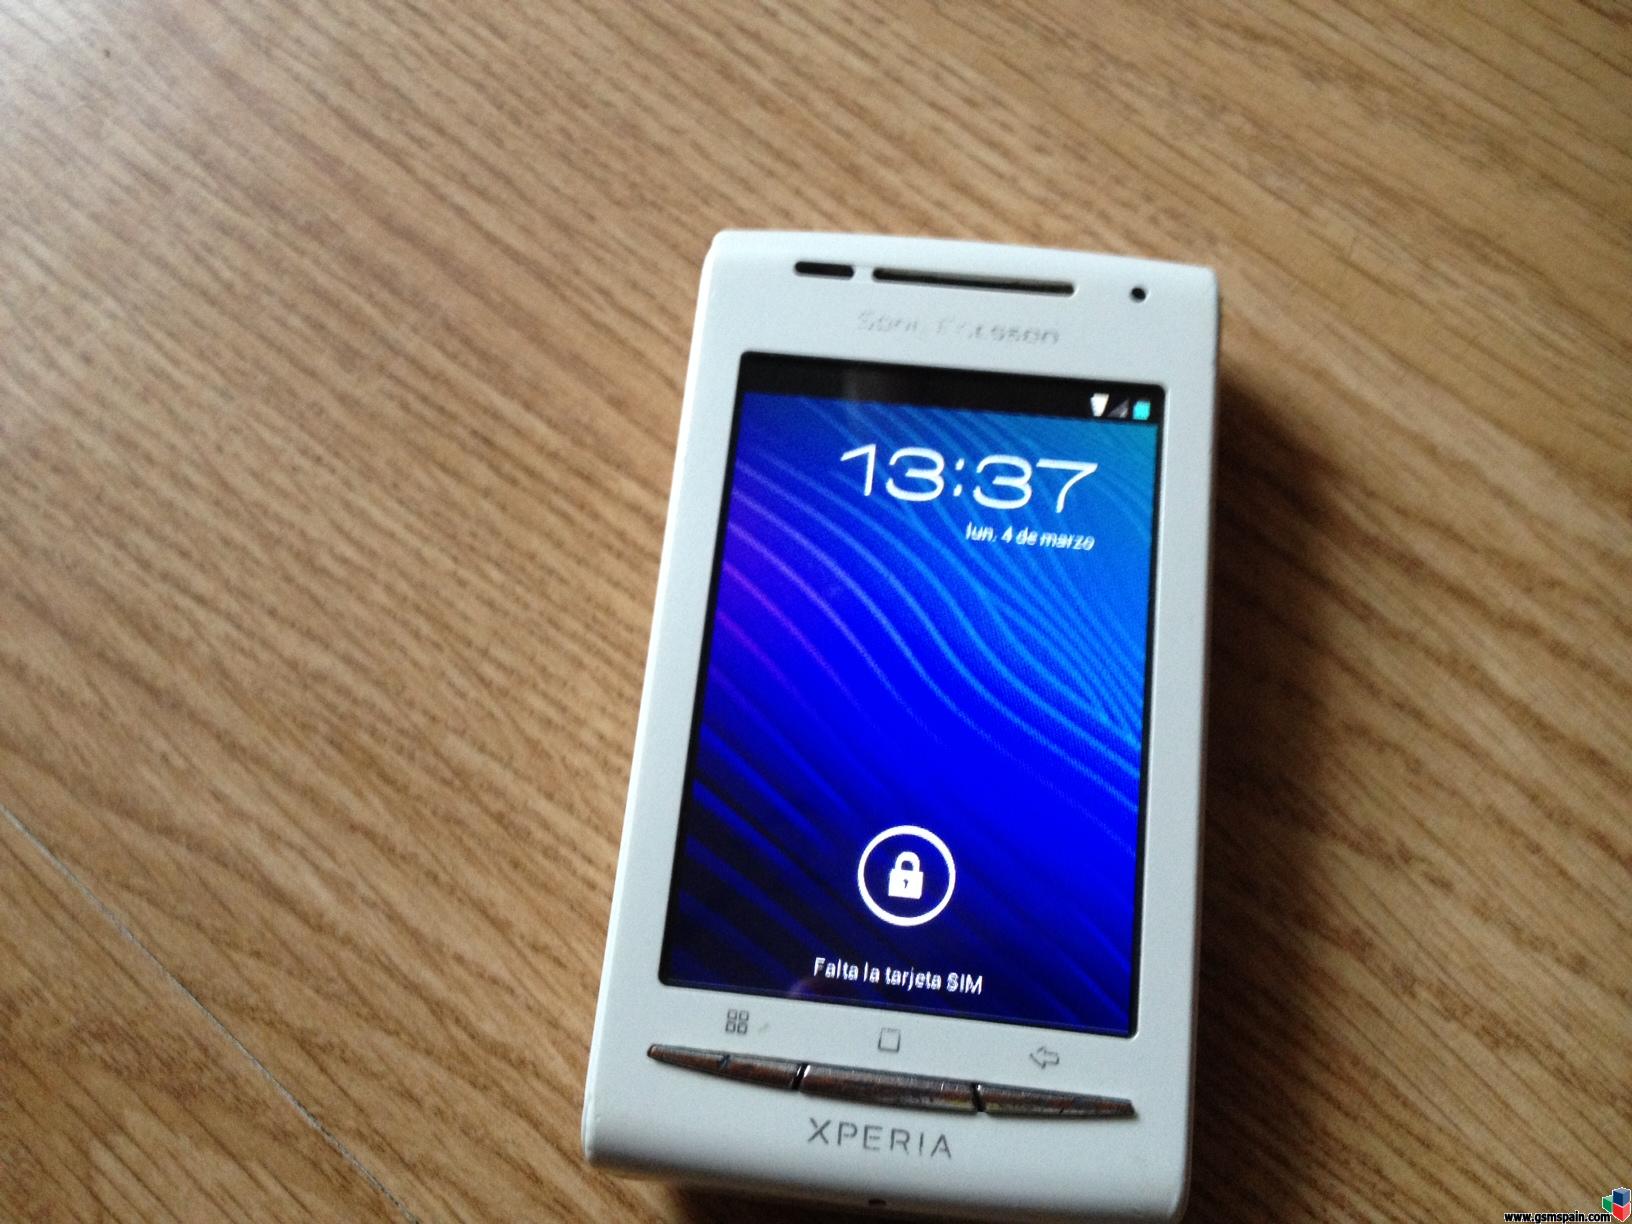 [VENDO] Sony Ericsson Xperia X8 usado